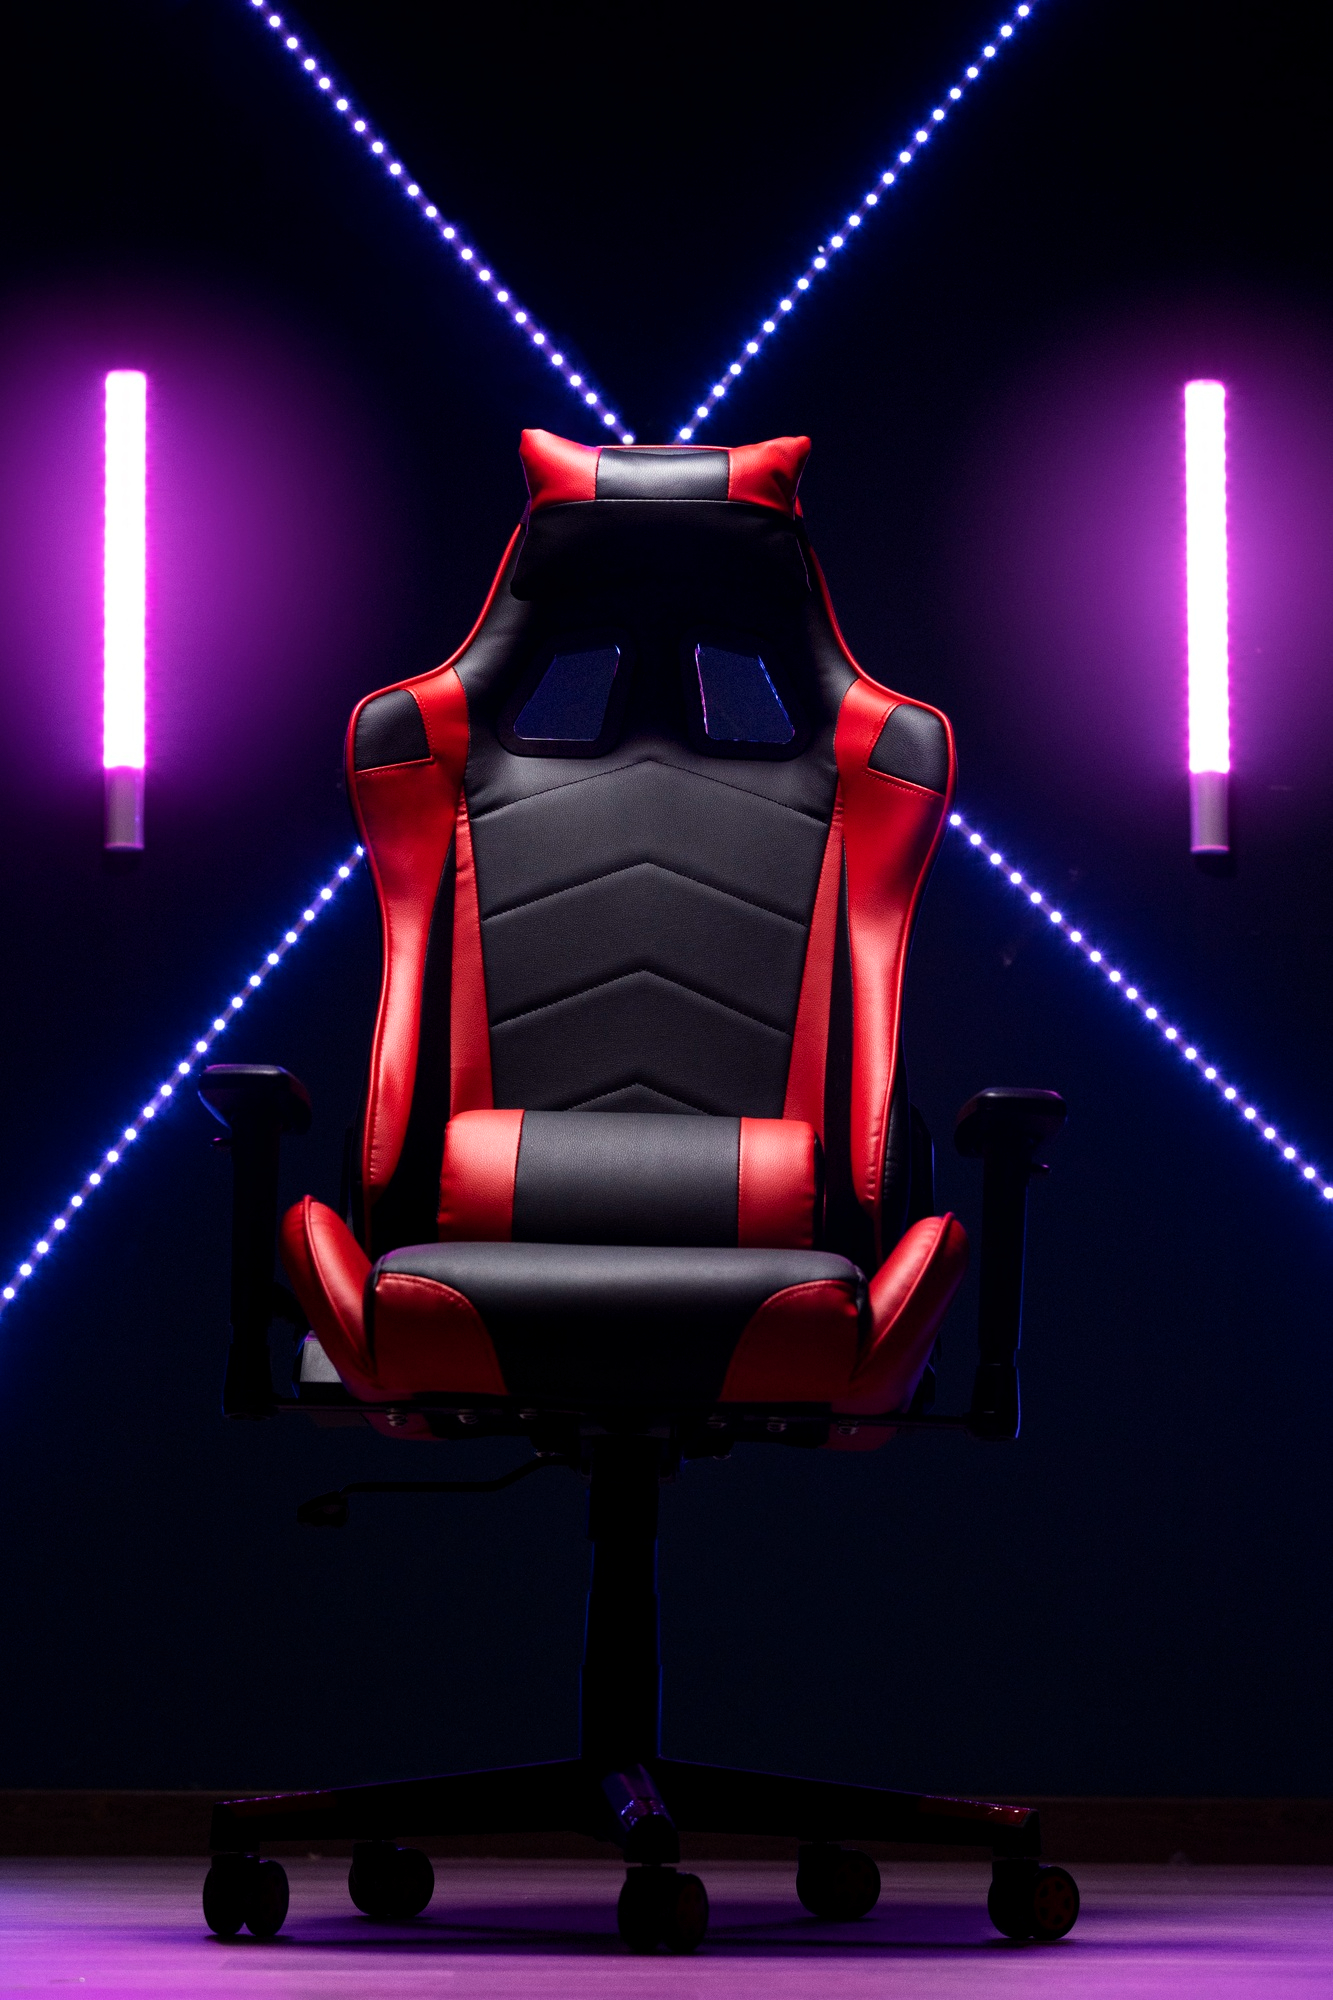 A gaming chair | Source: Freepik